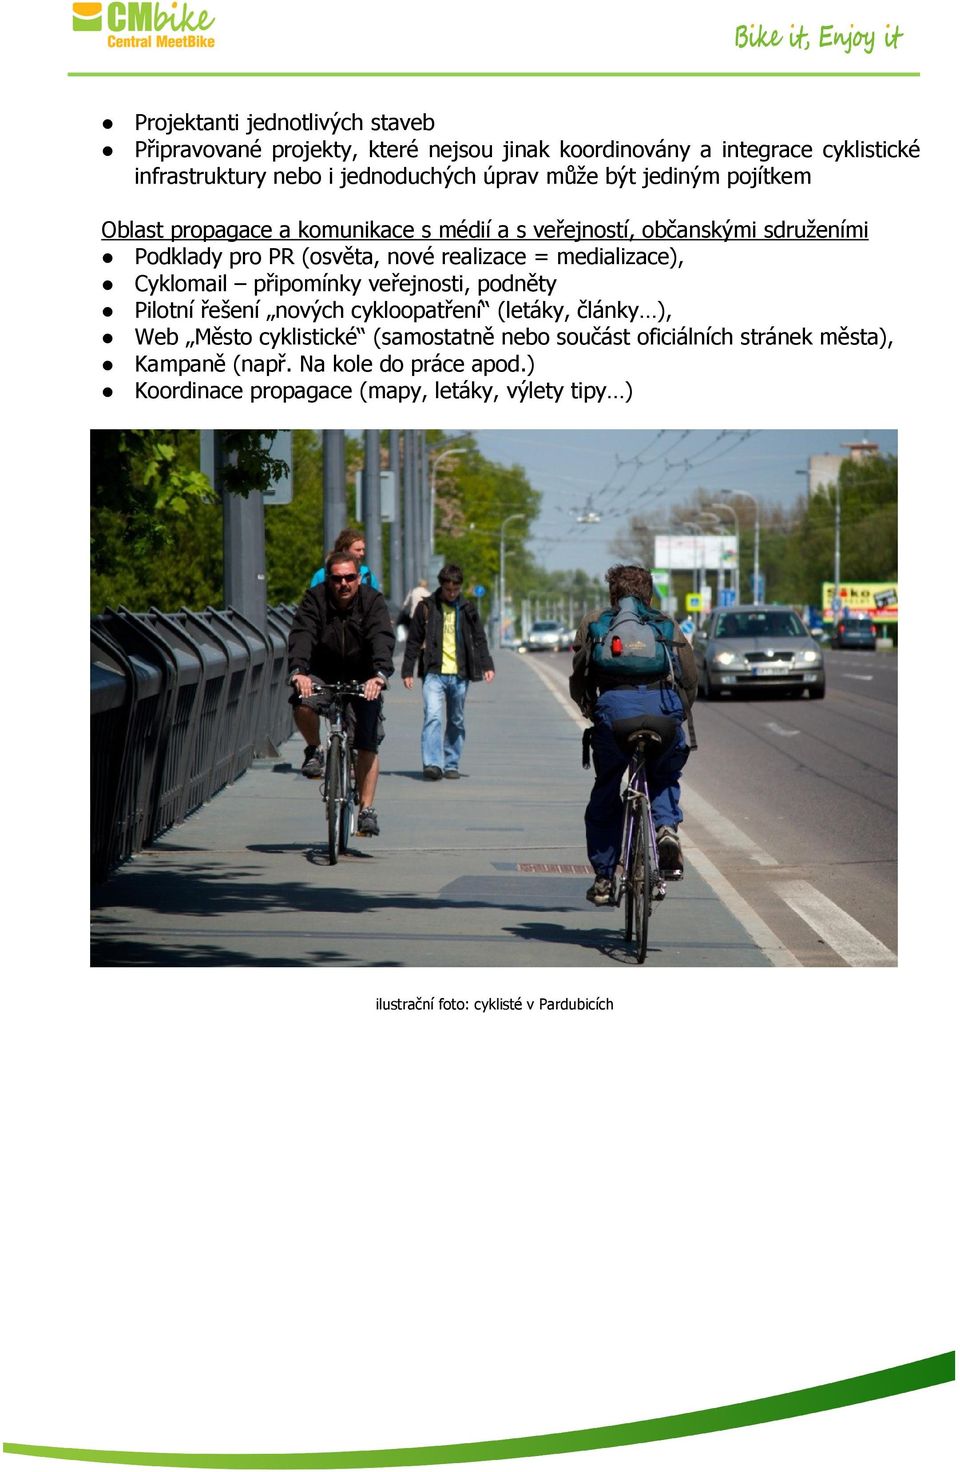 medializace), Cyklomail připomínky veřejnosti, podněty Pilotní řešení nových cykloopatření (letáky, články ), Web Město cyklistické (samostatně nebo